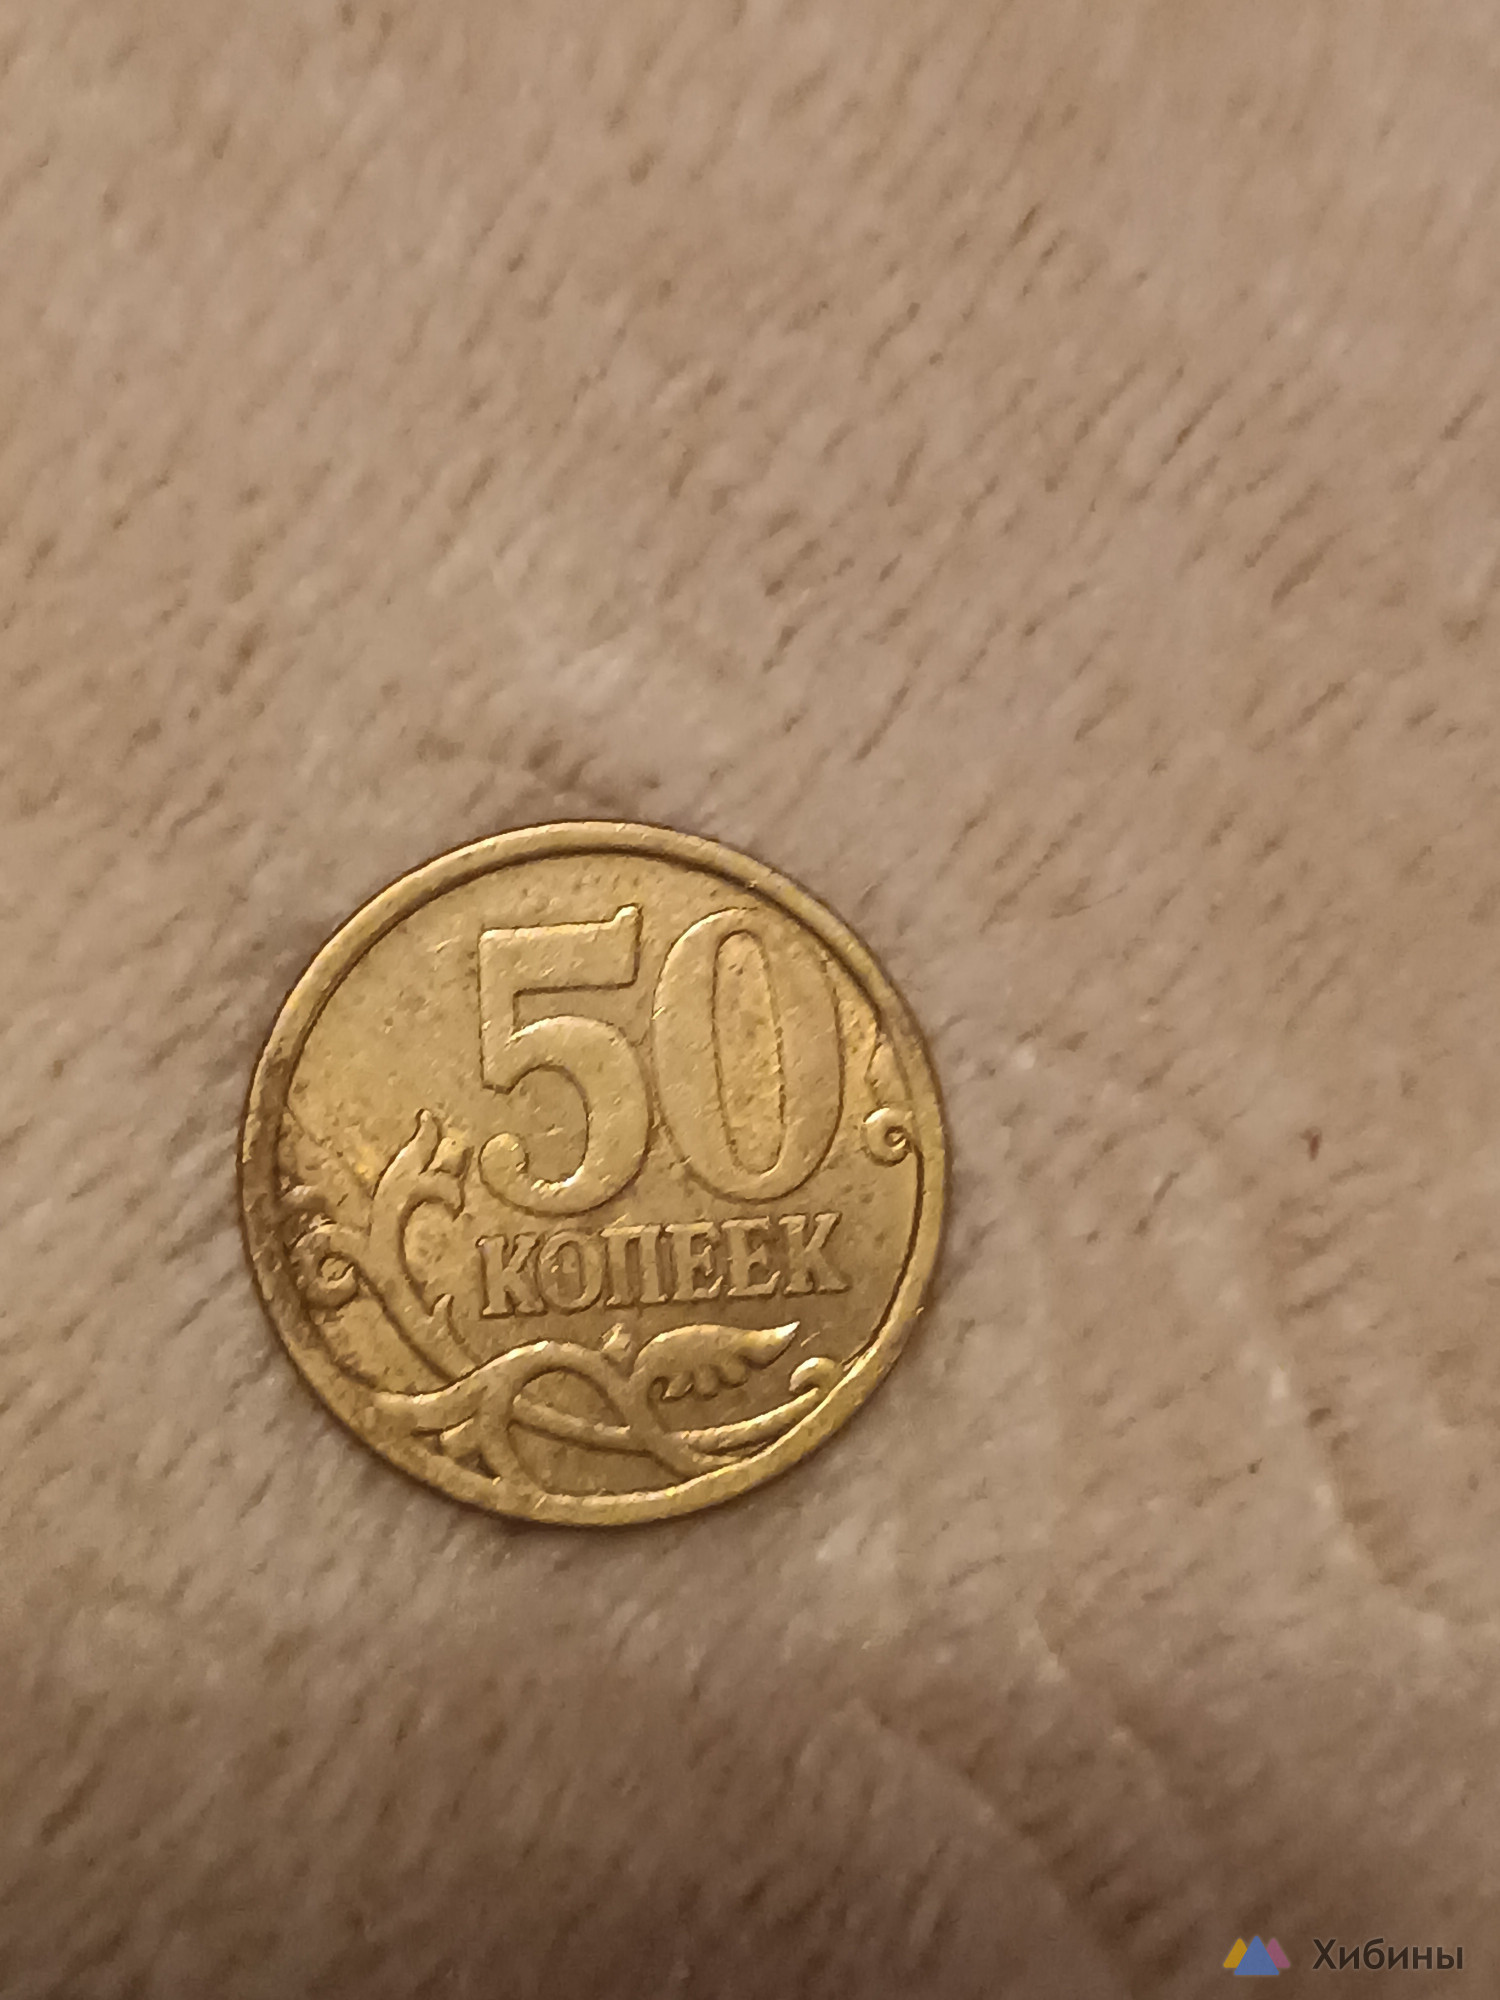 Монеты 50 копеек, 2006-2007 год. М и СП